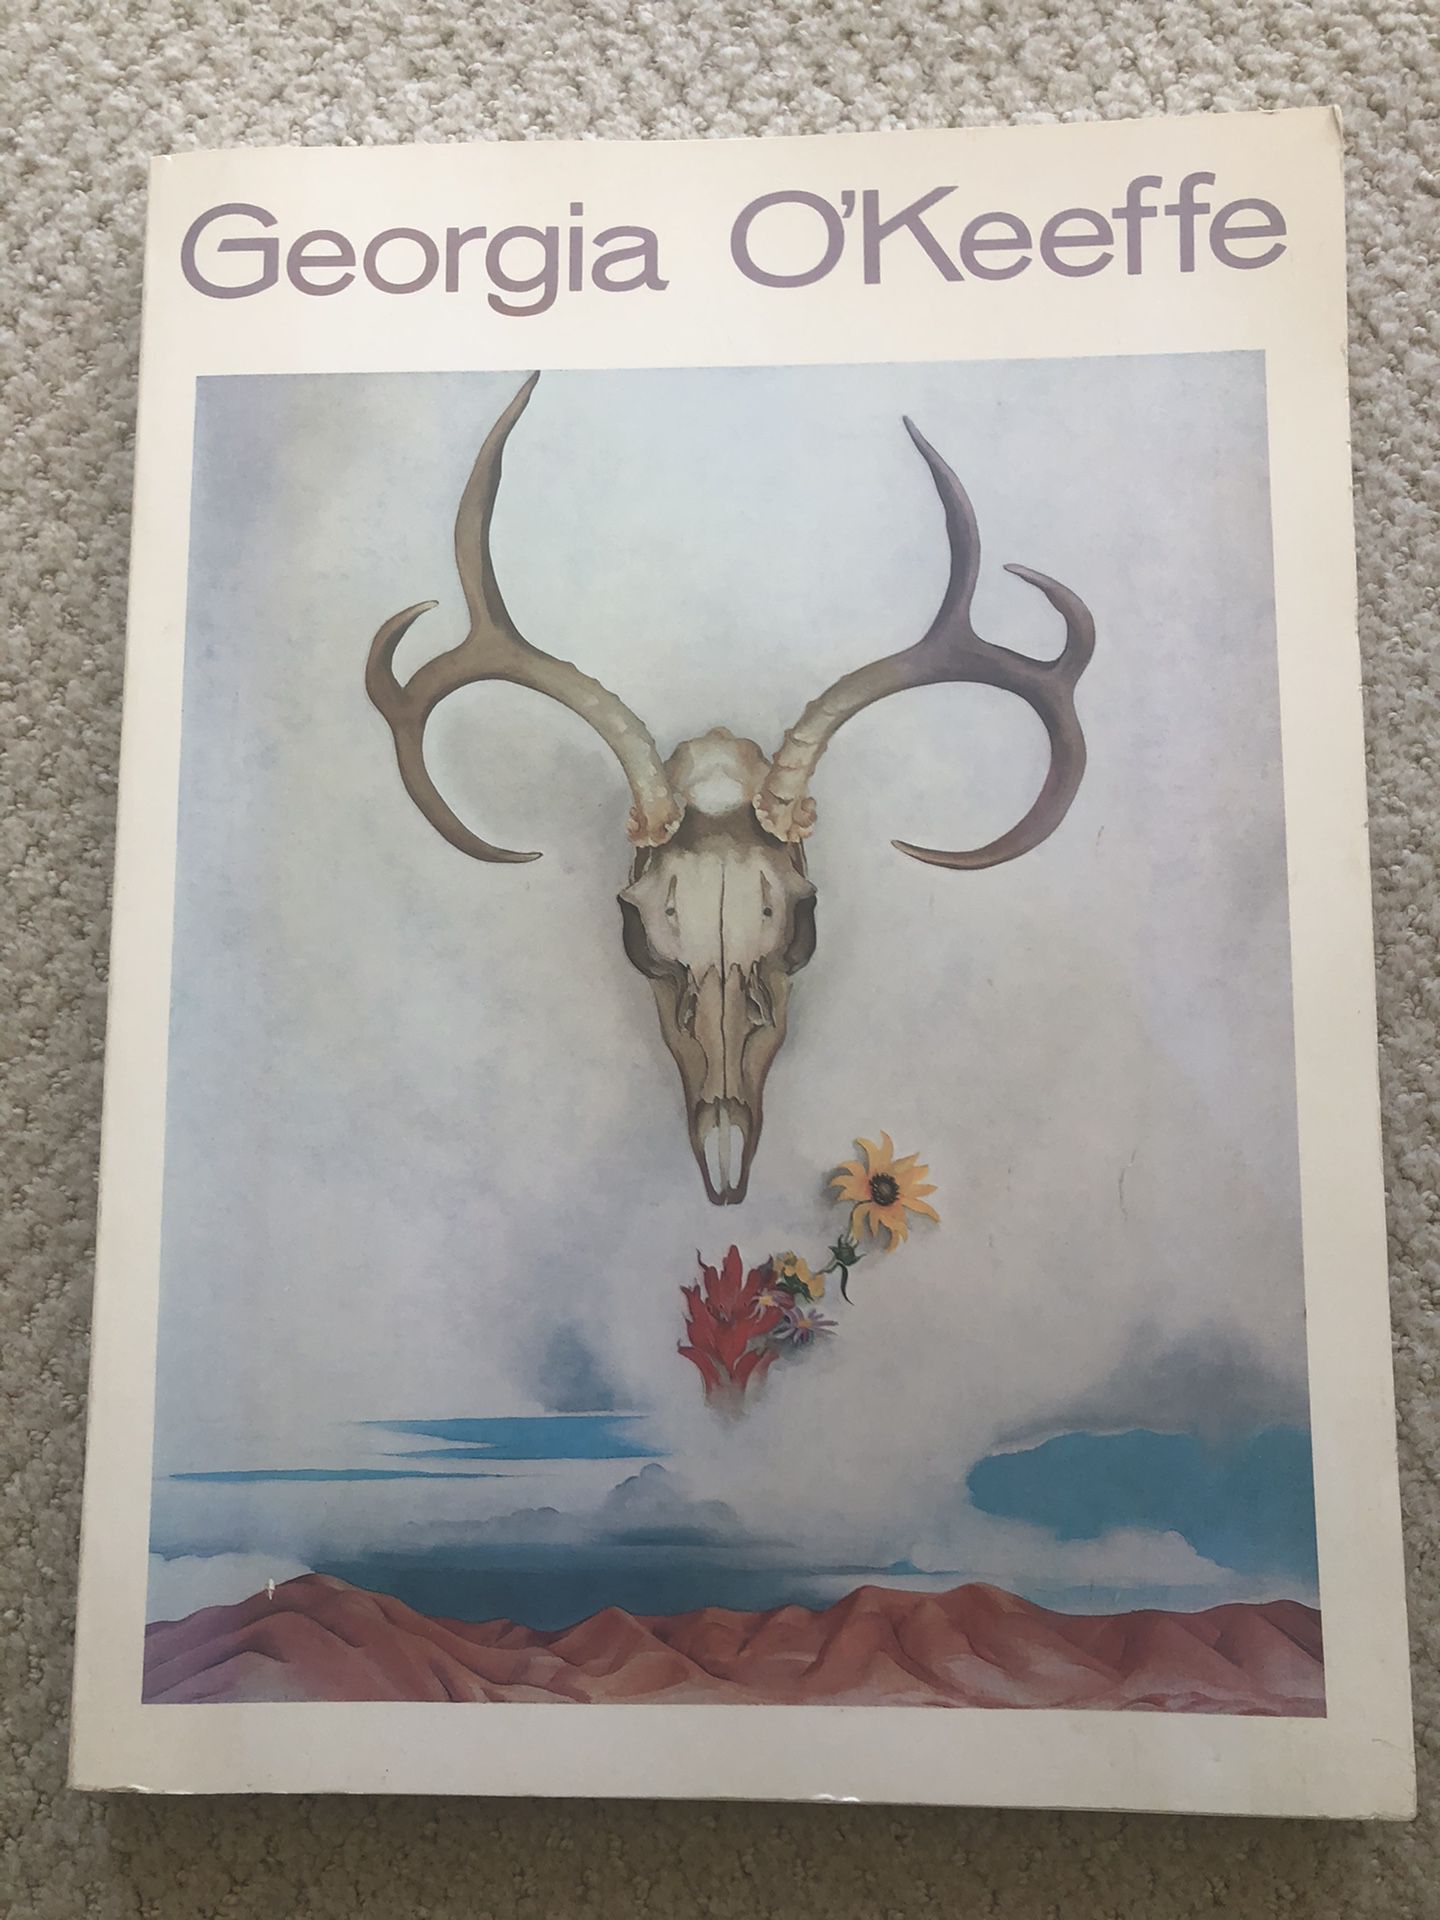 Georgia OKeefe large coffee table book